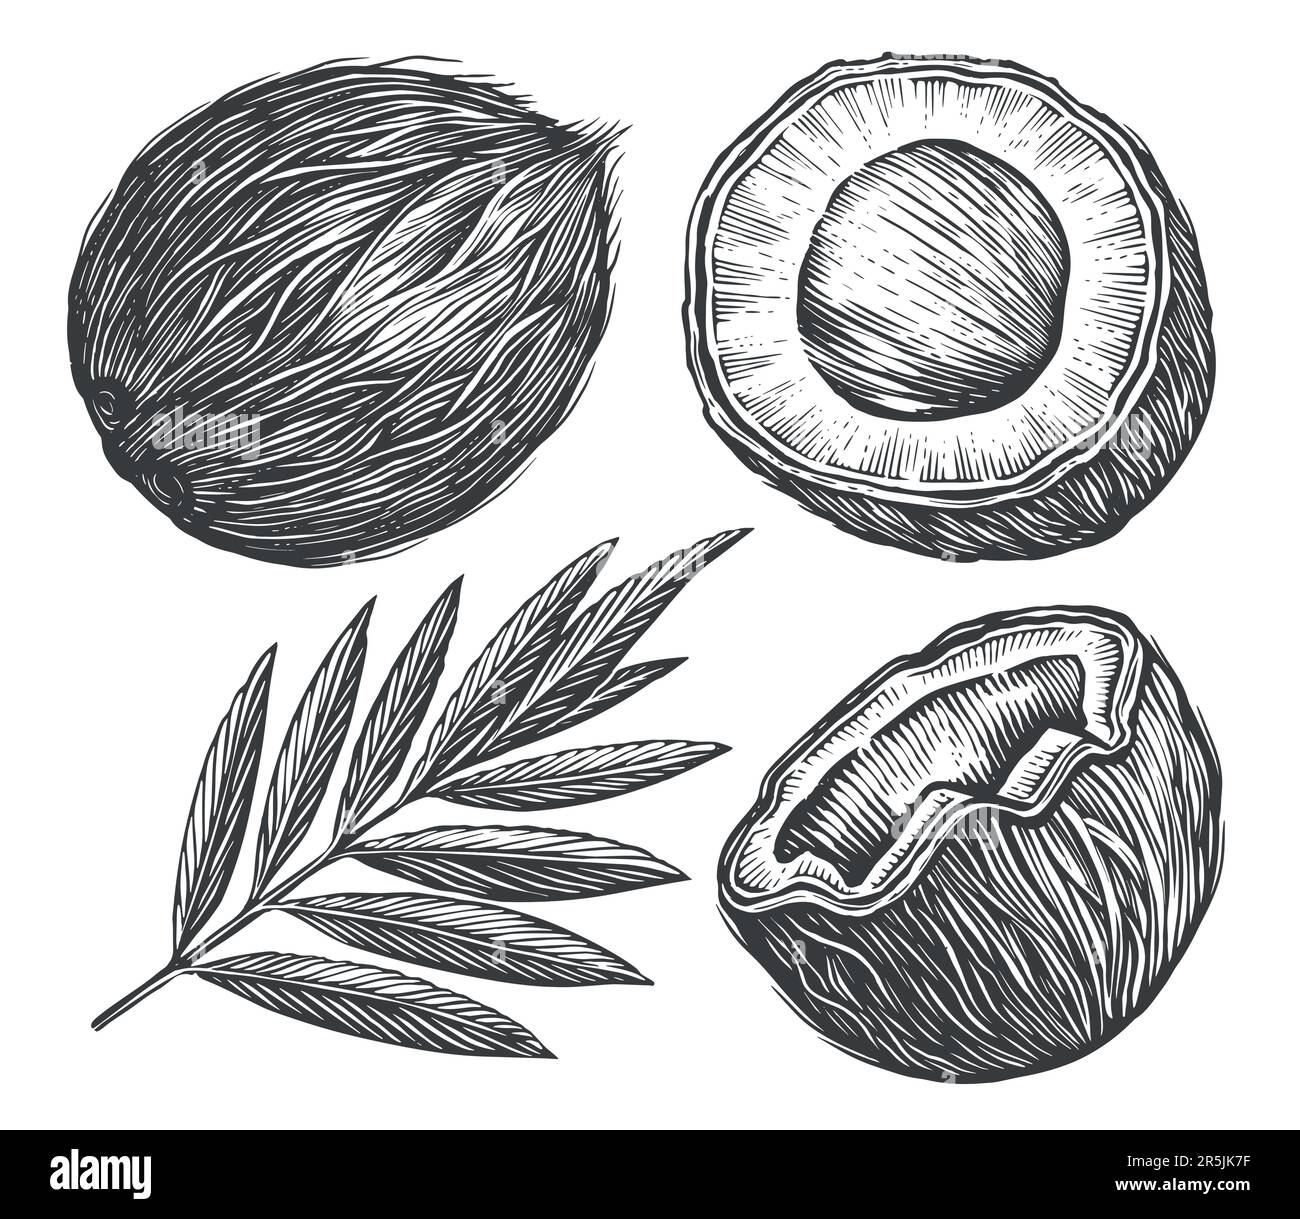 Kokosnuss mit Palmenblatt. Skizze Vektor tropische Lebensmittel Vektor Illustration. Handgezeichnete Zeichnungen im Vintage-Stil Stock Vektor